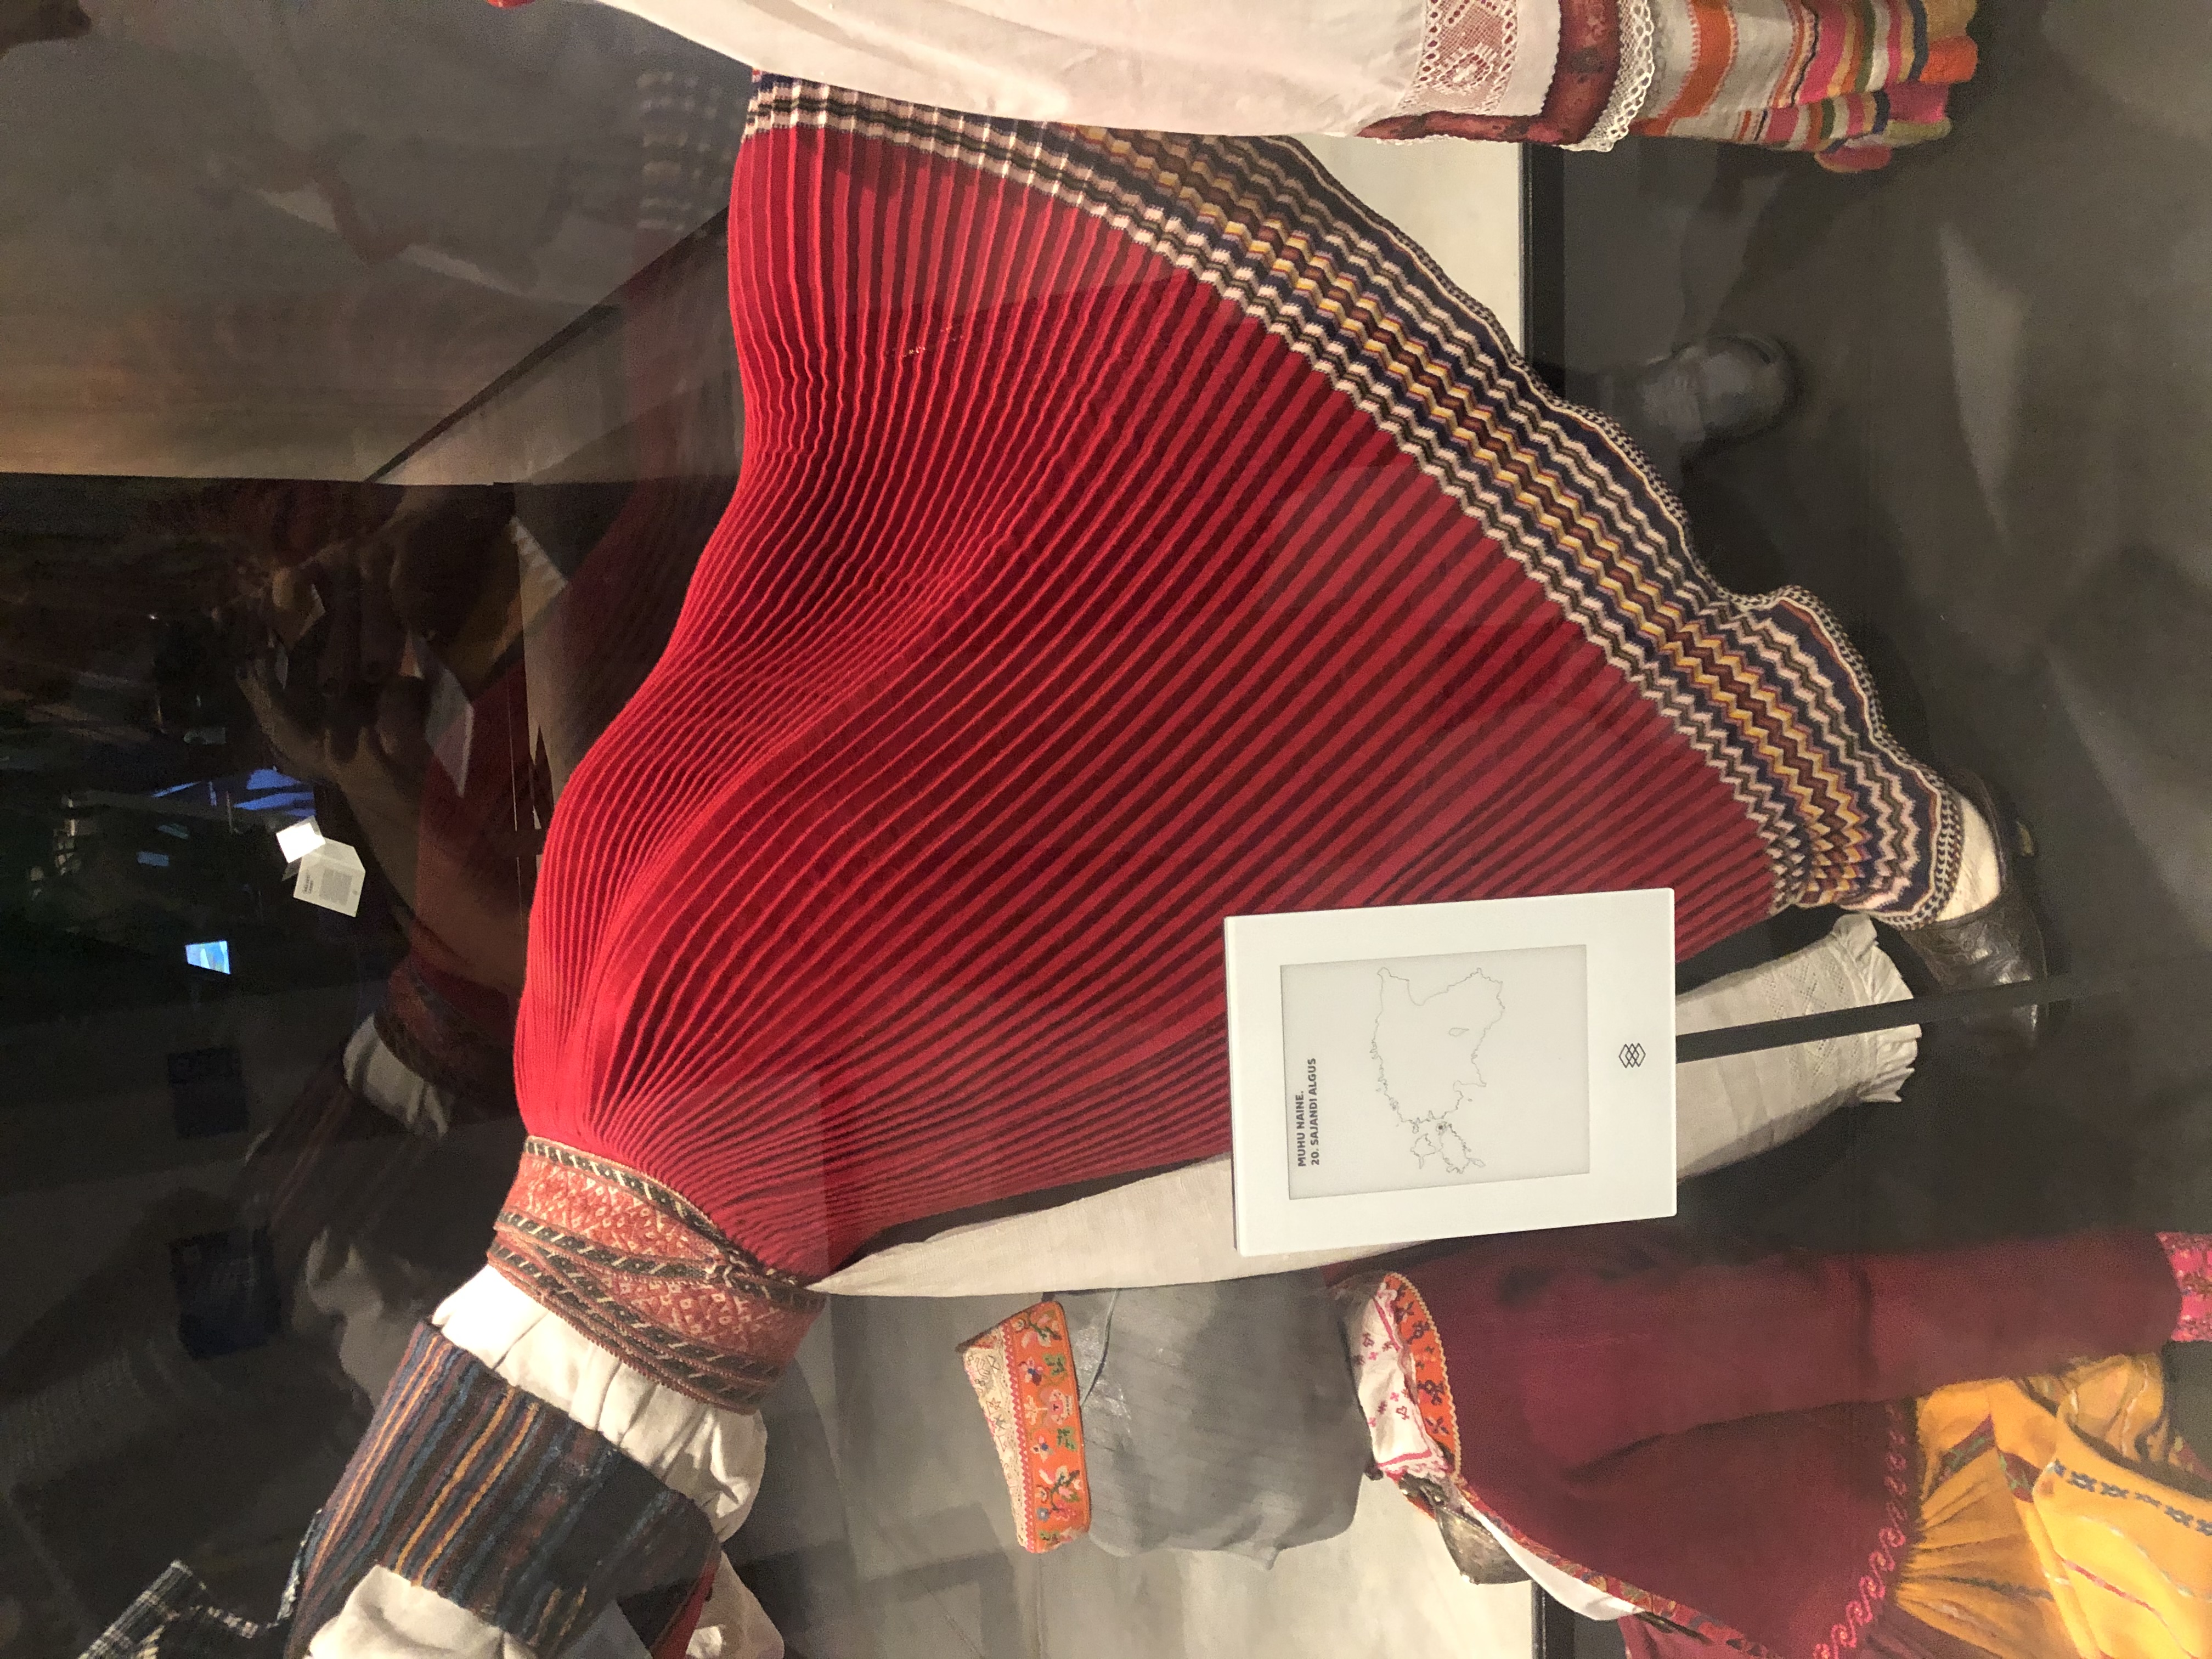 Tartu knitted skirt